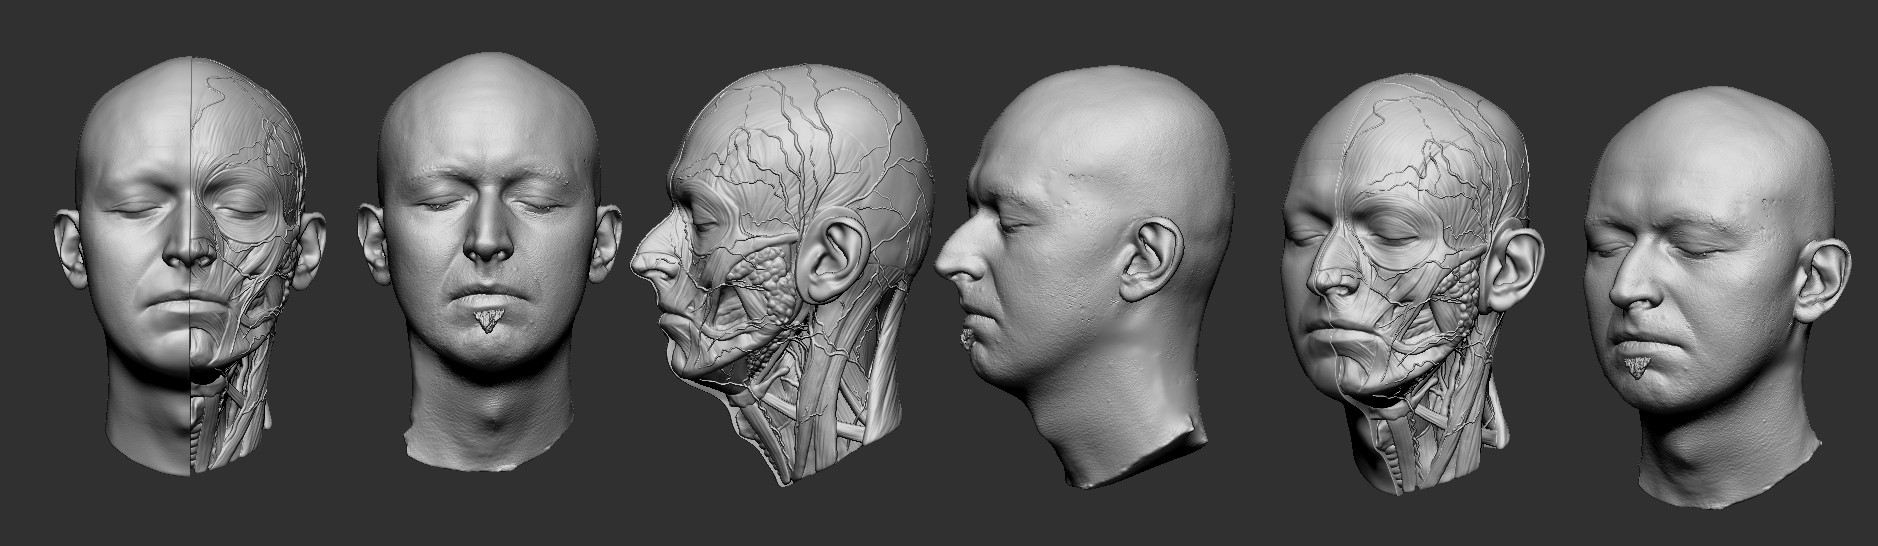 Три затылка. Голова человека профиль и анфас. 3д модель головы человека. Макет головы человека. Анатомия лица в разных ракурсах.